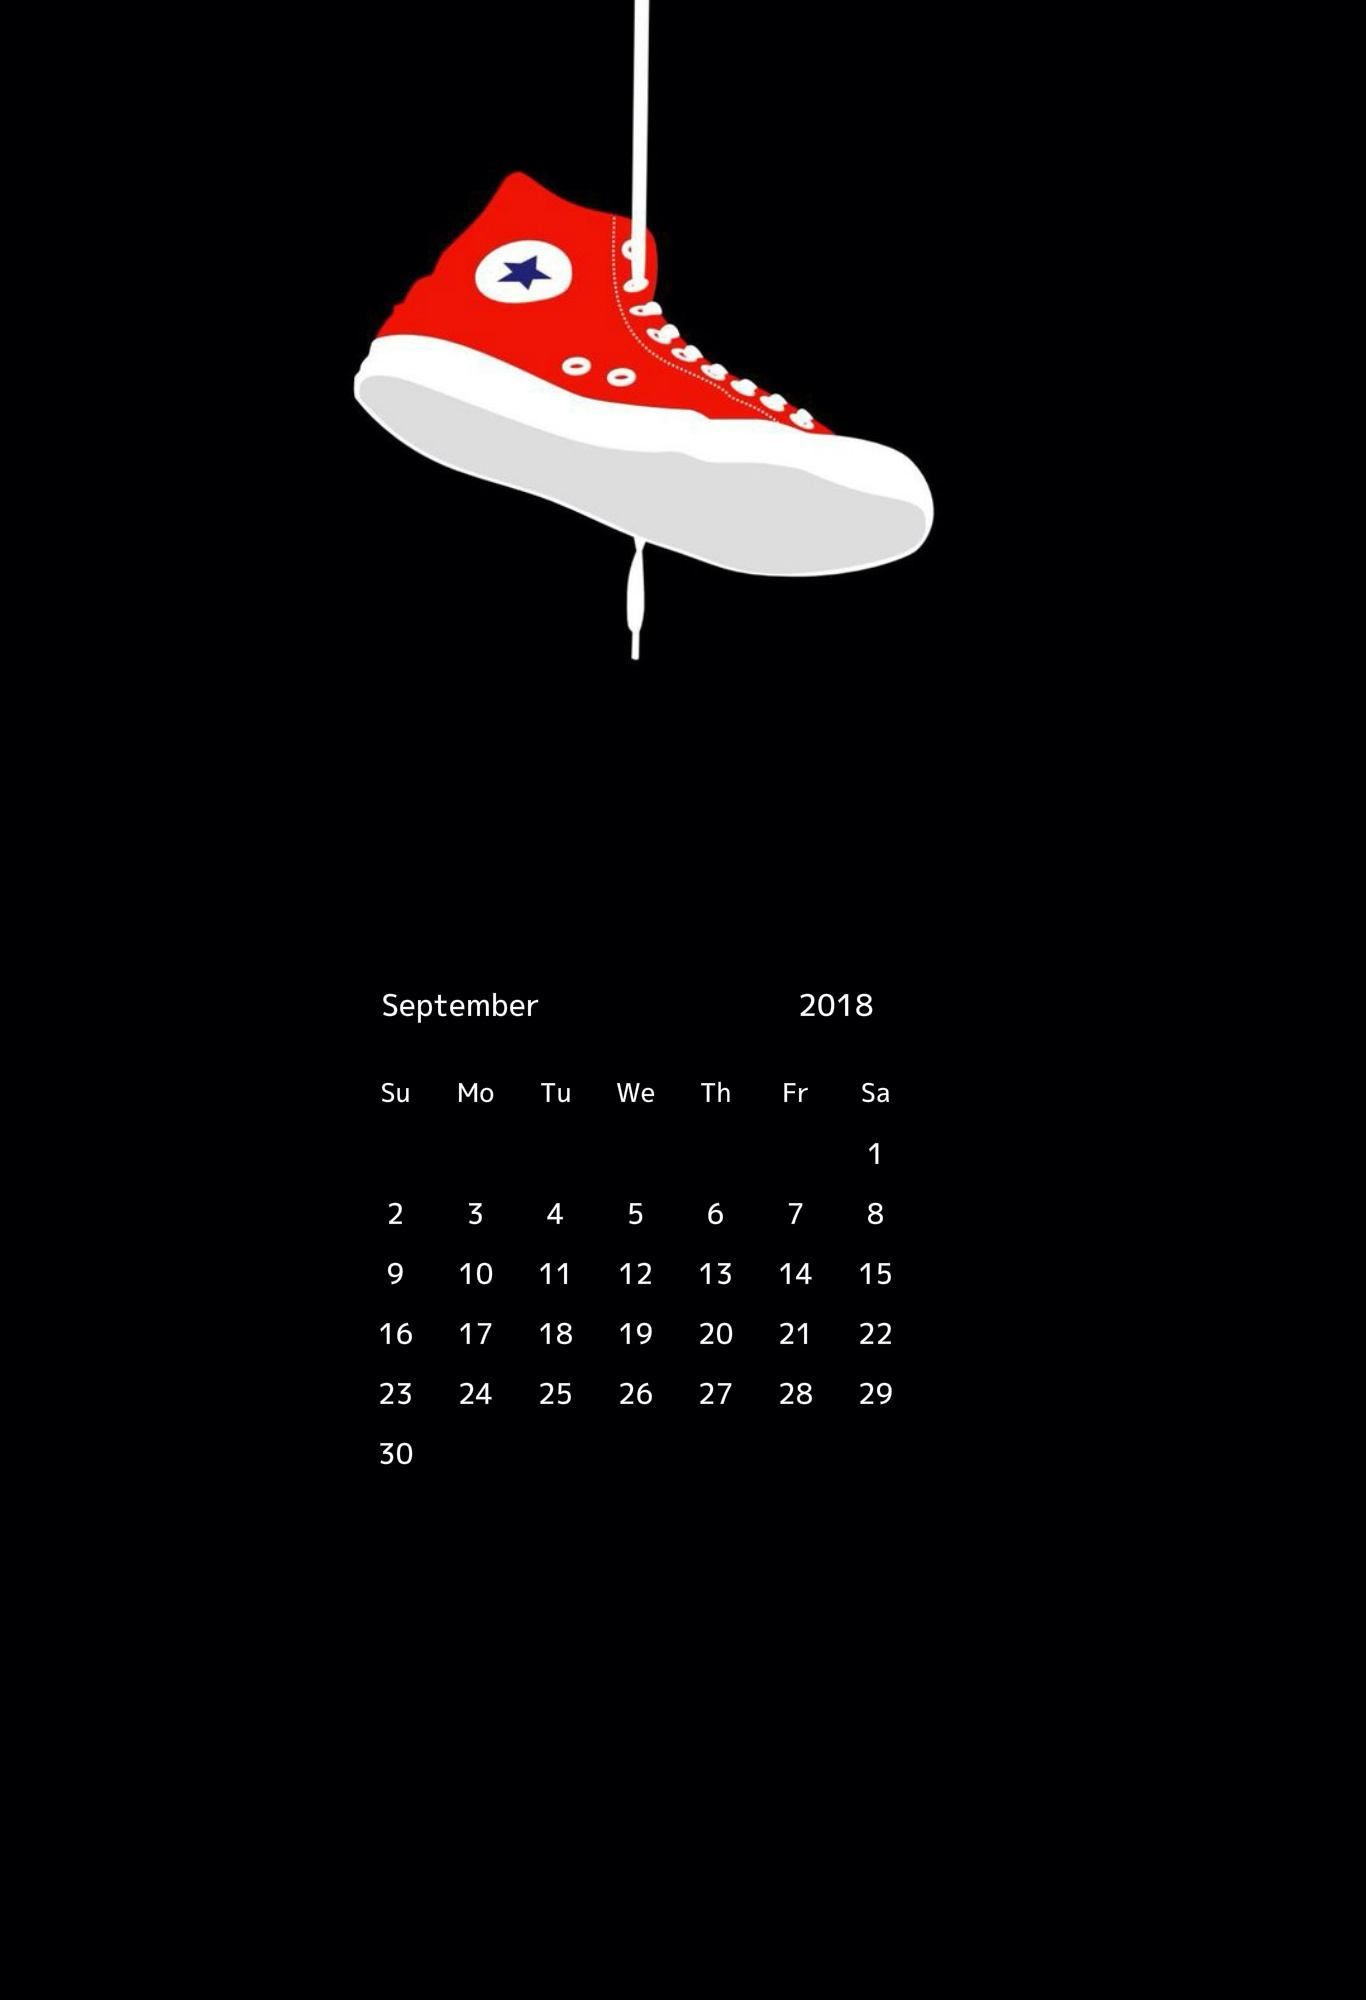 Free September 2018 Iphone Wallpaper September Calendar, - Phone Calendar September 2018 - HD Wallpaper 